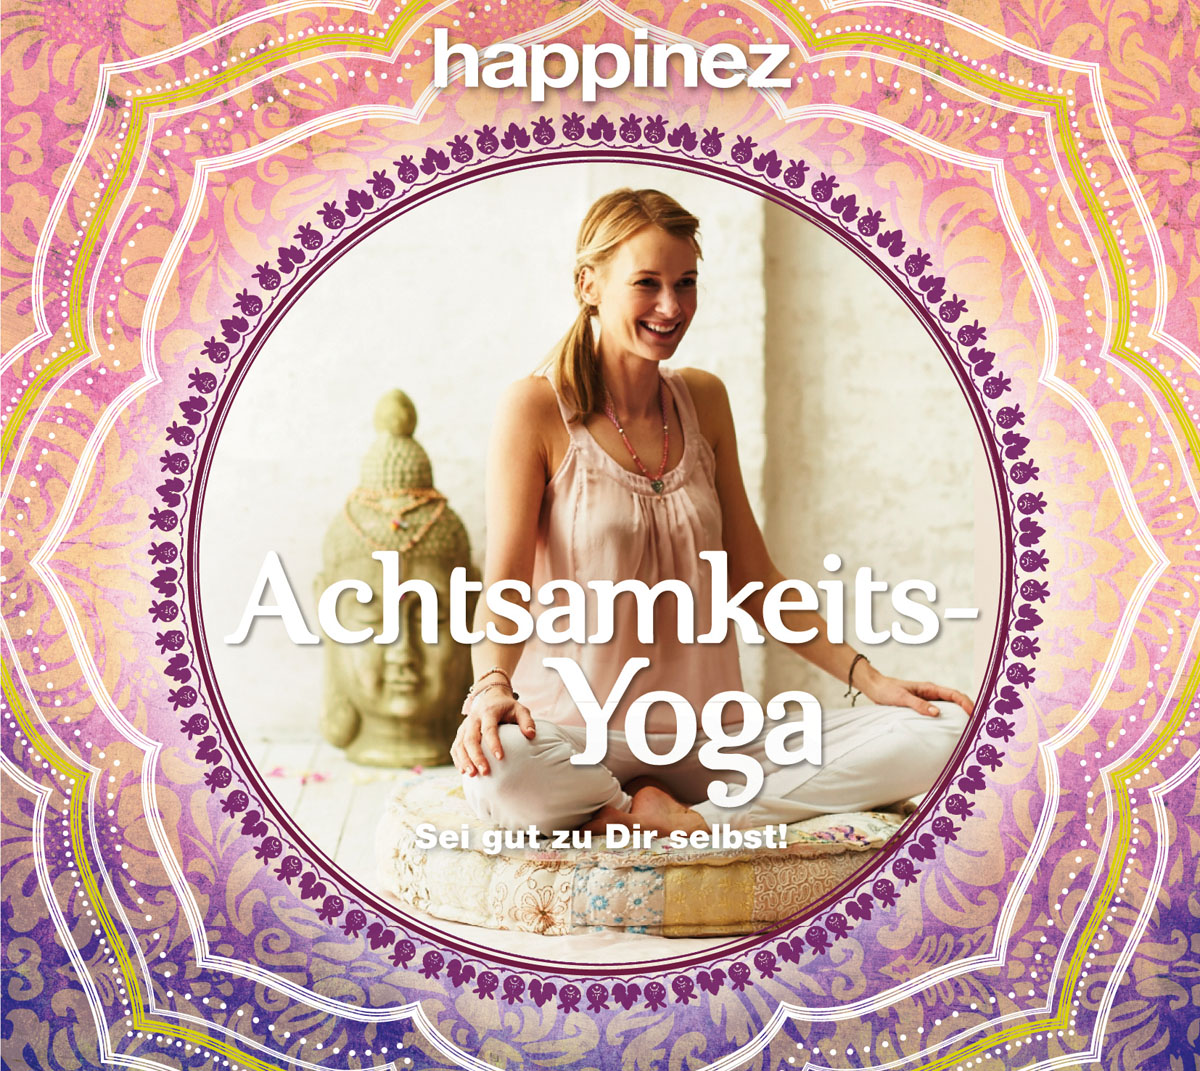 Happinez CD Achtsamkeits-Yoga